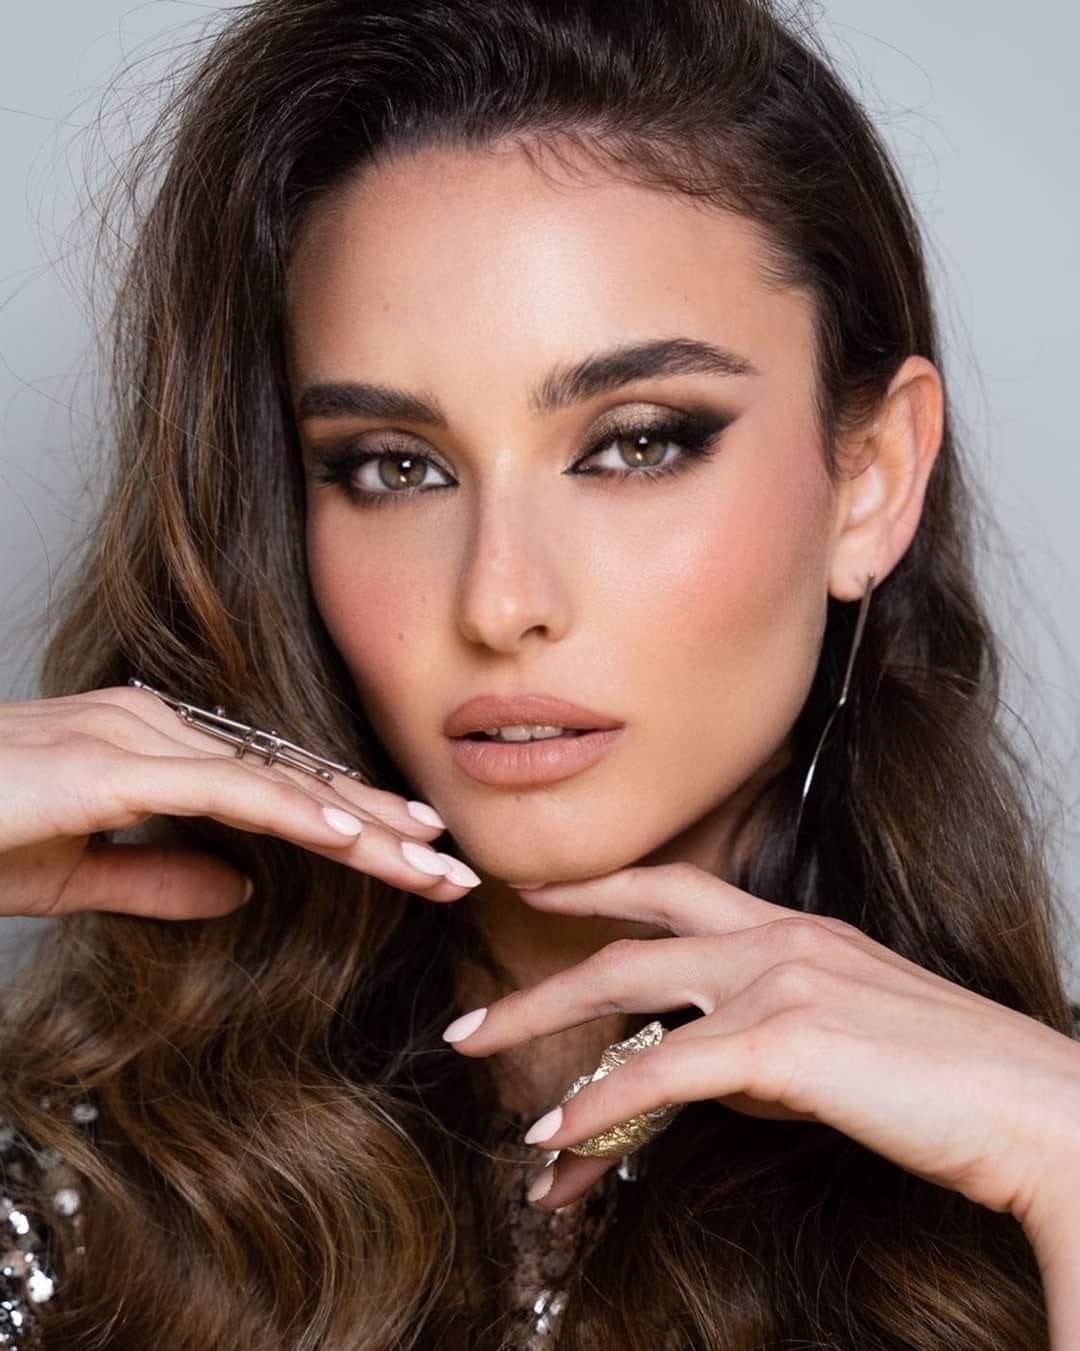 Người mẫu 22 tuổi từng phục vụ trong quân đội chính thức đăng quang Hoa hậu Israel